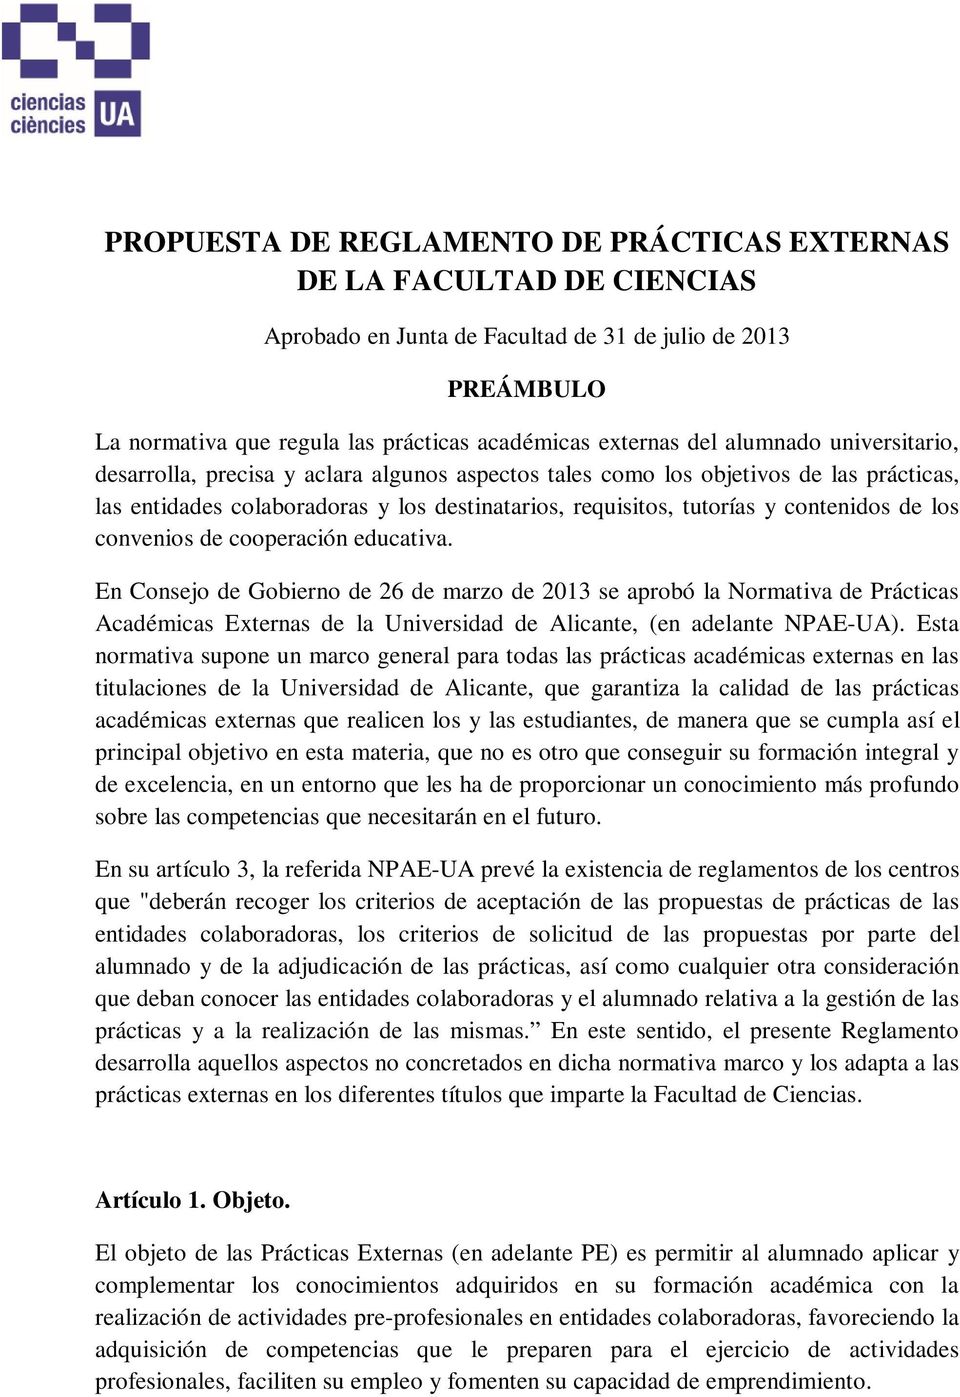 los convenios de cooperación educativa. En Consejo de Gobierno de 26 de marzo de 2013 se aprobó la Normativa de Prácticas Académicas Externas de la Universidad de Alicante, (en adelante NPAE-UA).